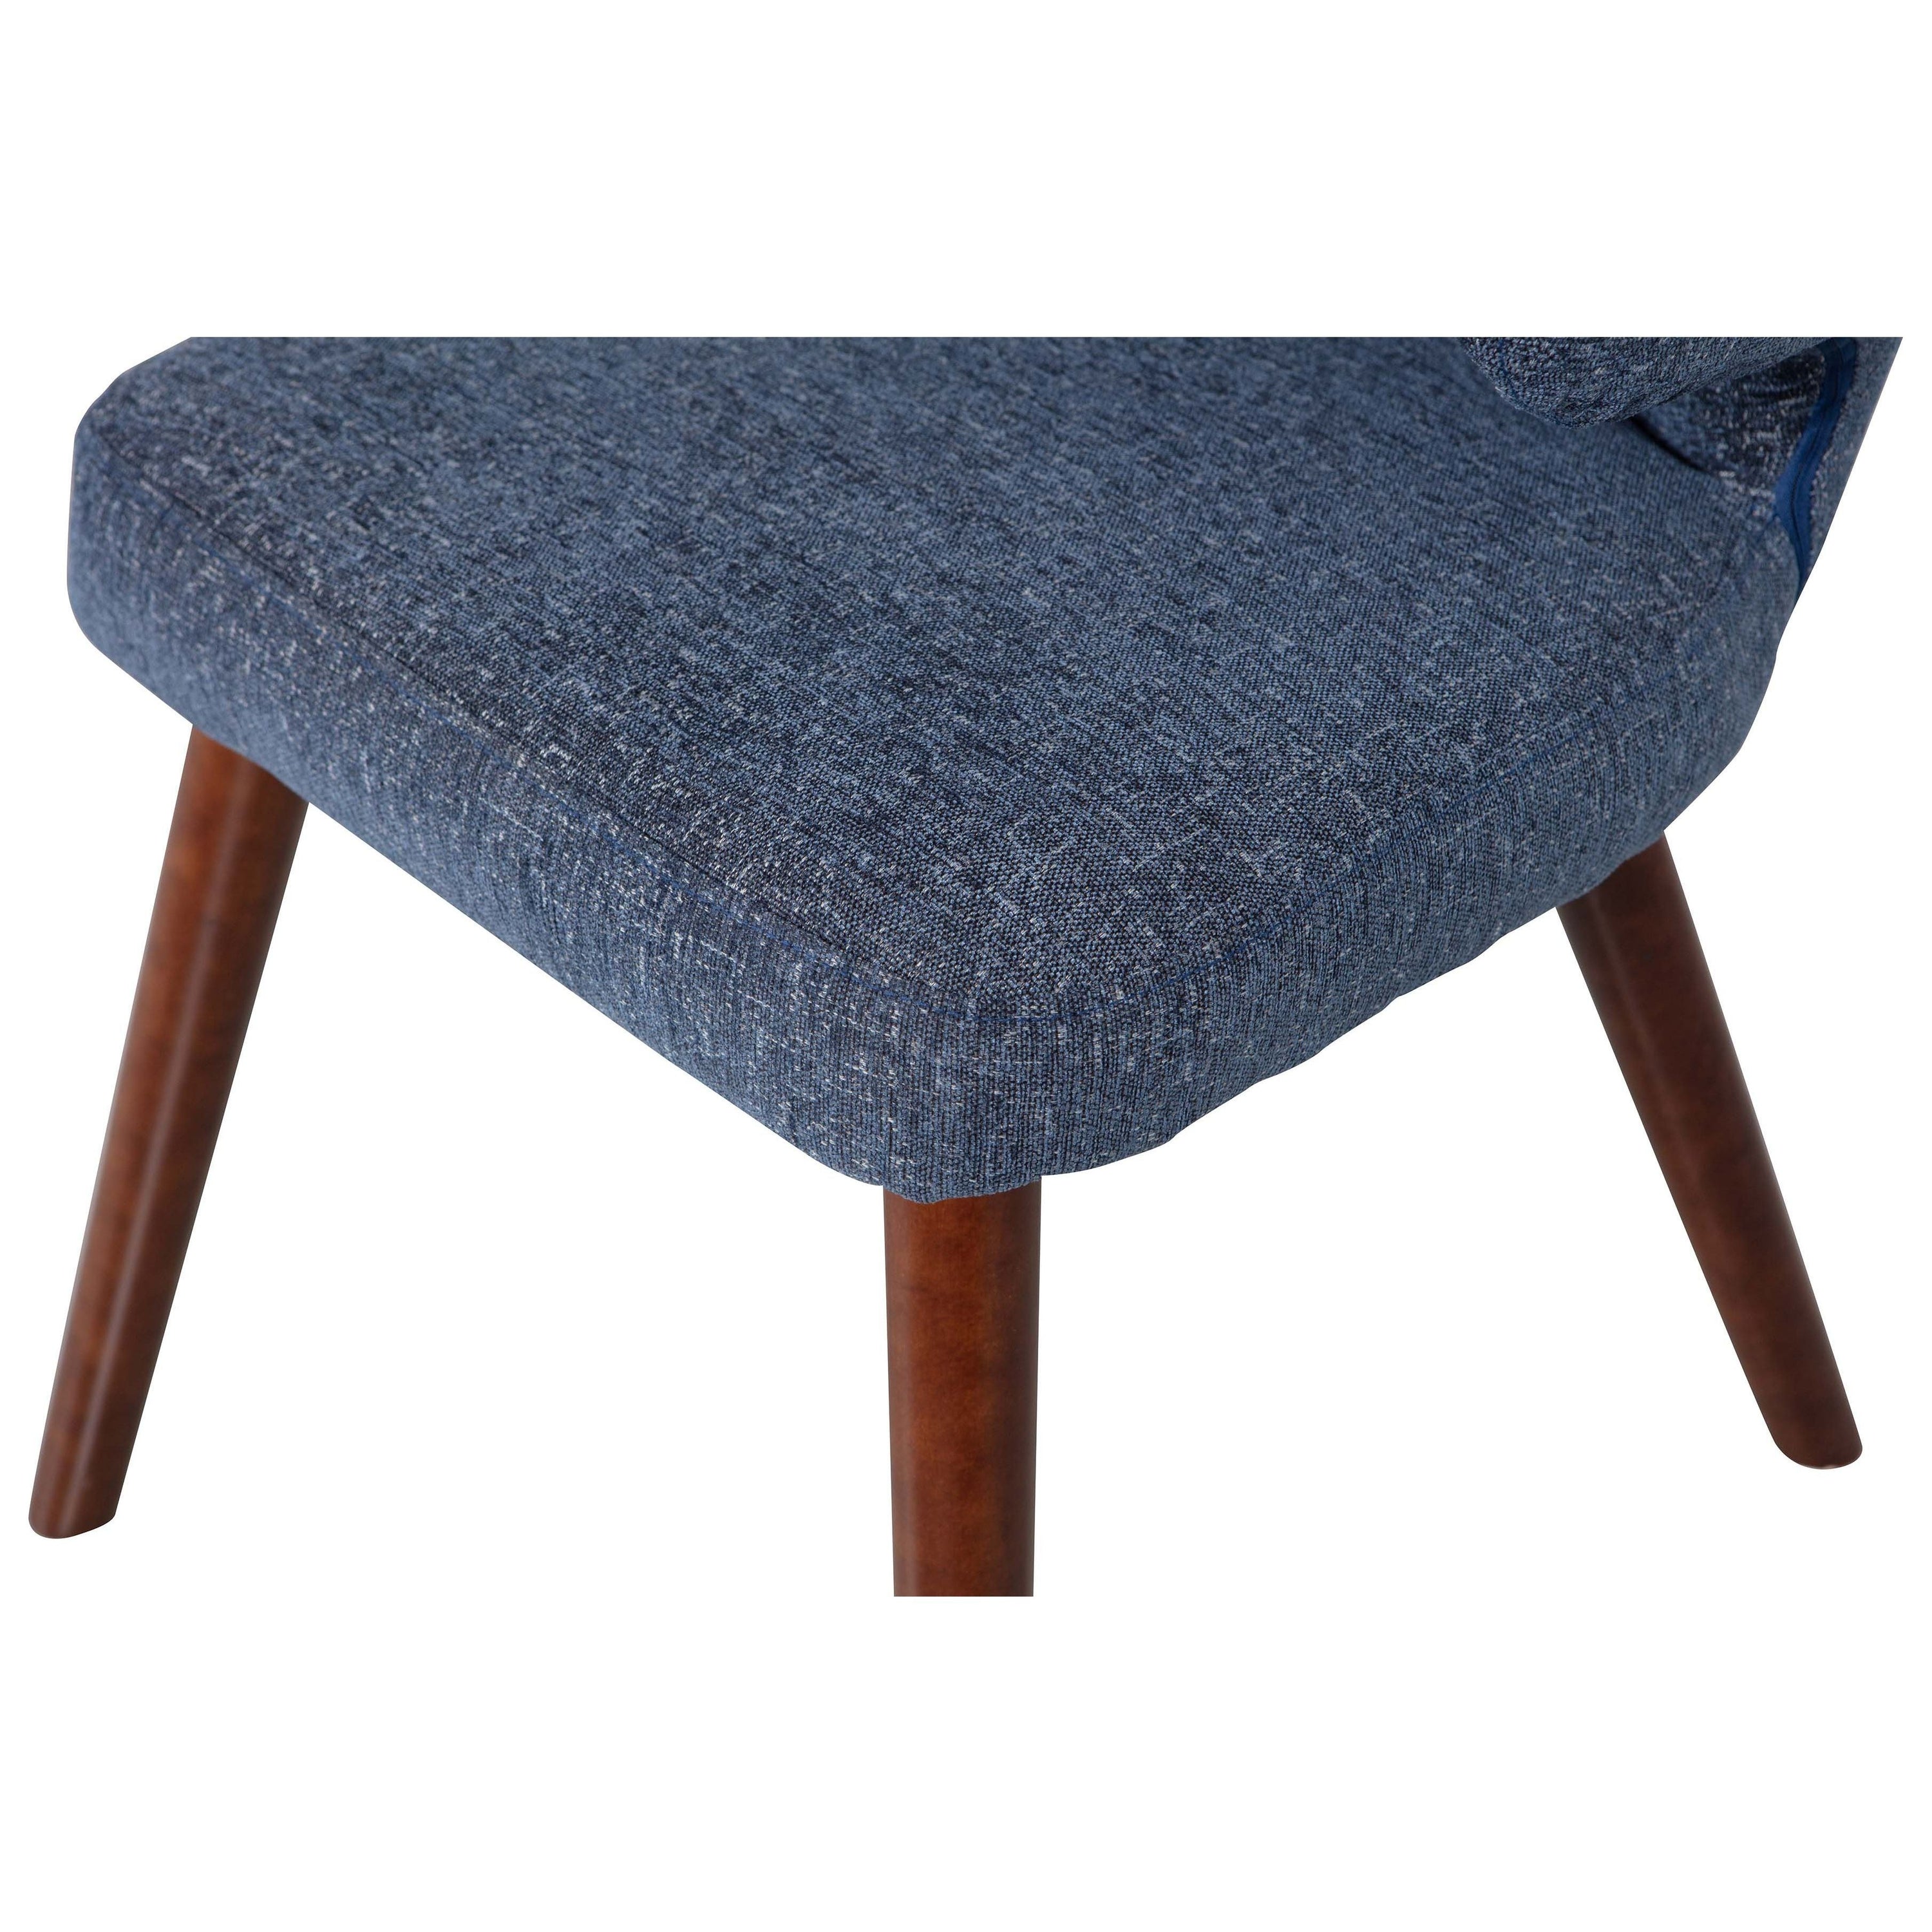 "CAPE" valgomojo kėdė, mėlyna spalva, mediena